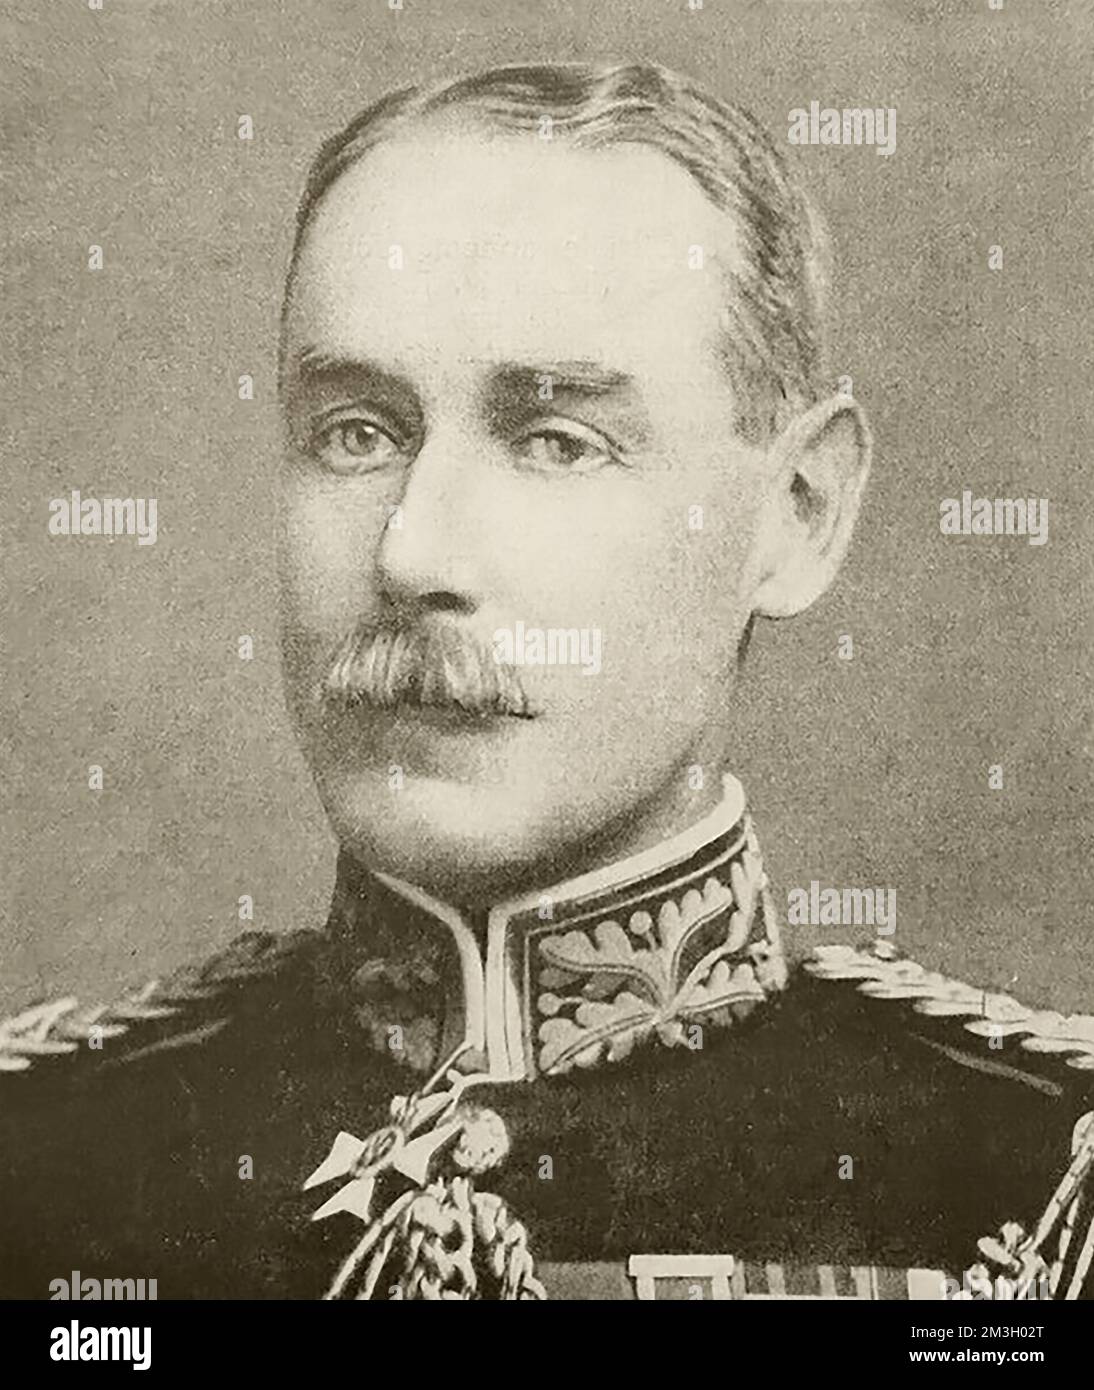 Generalleutnant Sir Archibald James Murray, Chef des kaiserlichen Generalstabs im Militärhauptquartier in London. Foto von 1915. Stockfoto